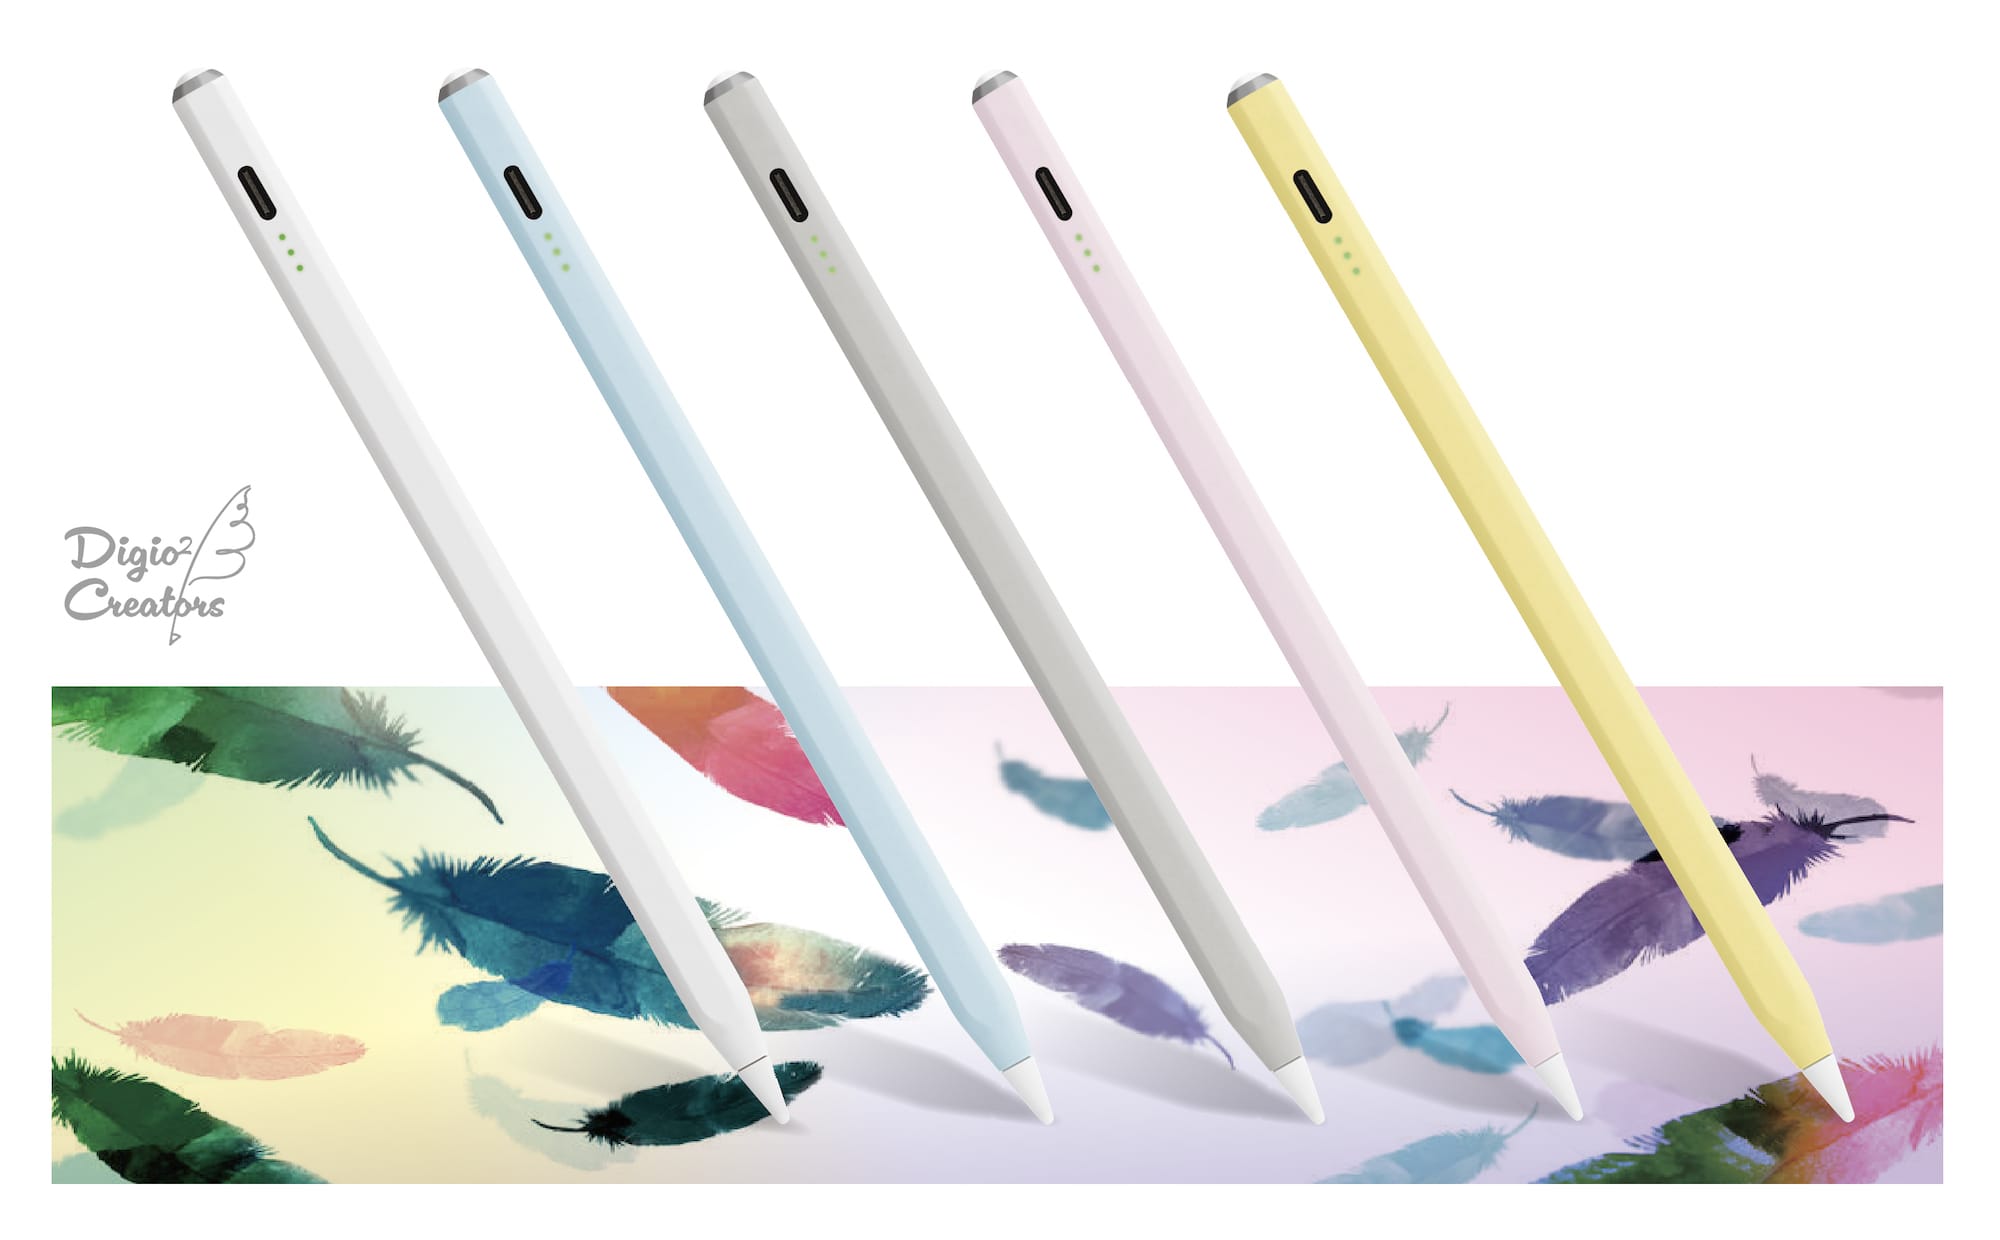 Digio²、iPad用アクティブタッチペンの新色を発売